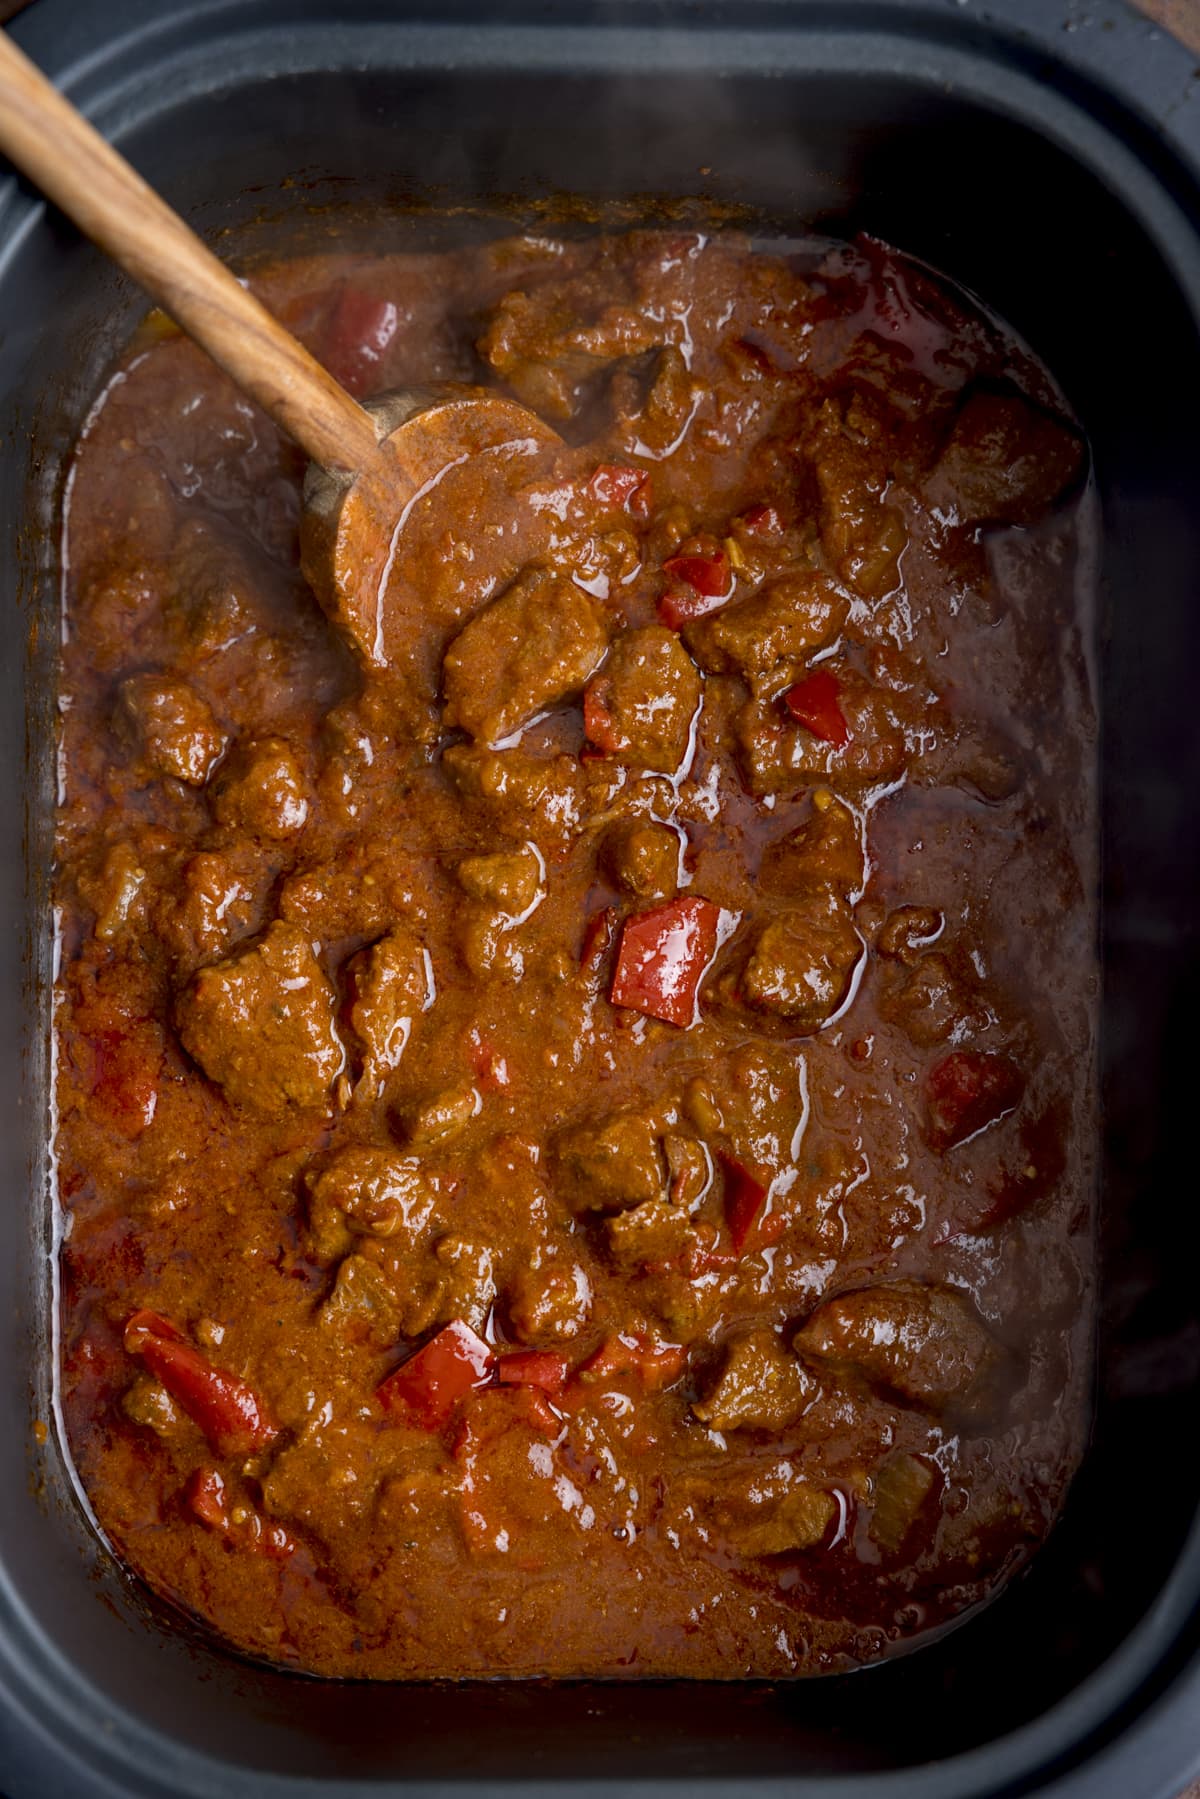 Obenliegendes Bild von Rindfleischcurry mit Paprika in einem langsamen Kocher.  Es gibt einen Holzlöffel im Curry.